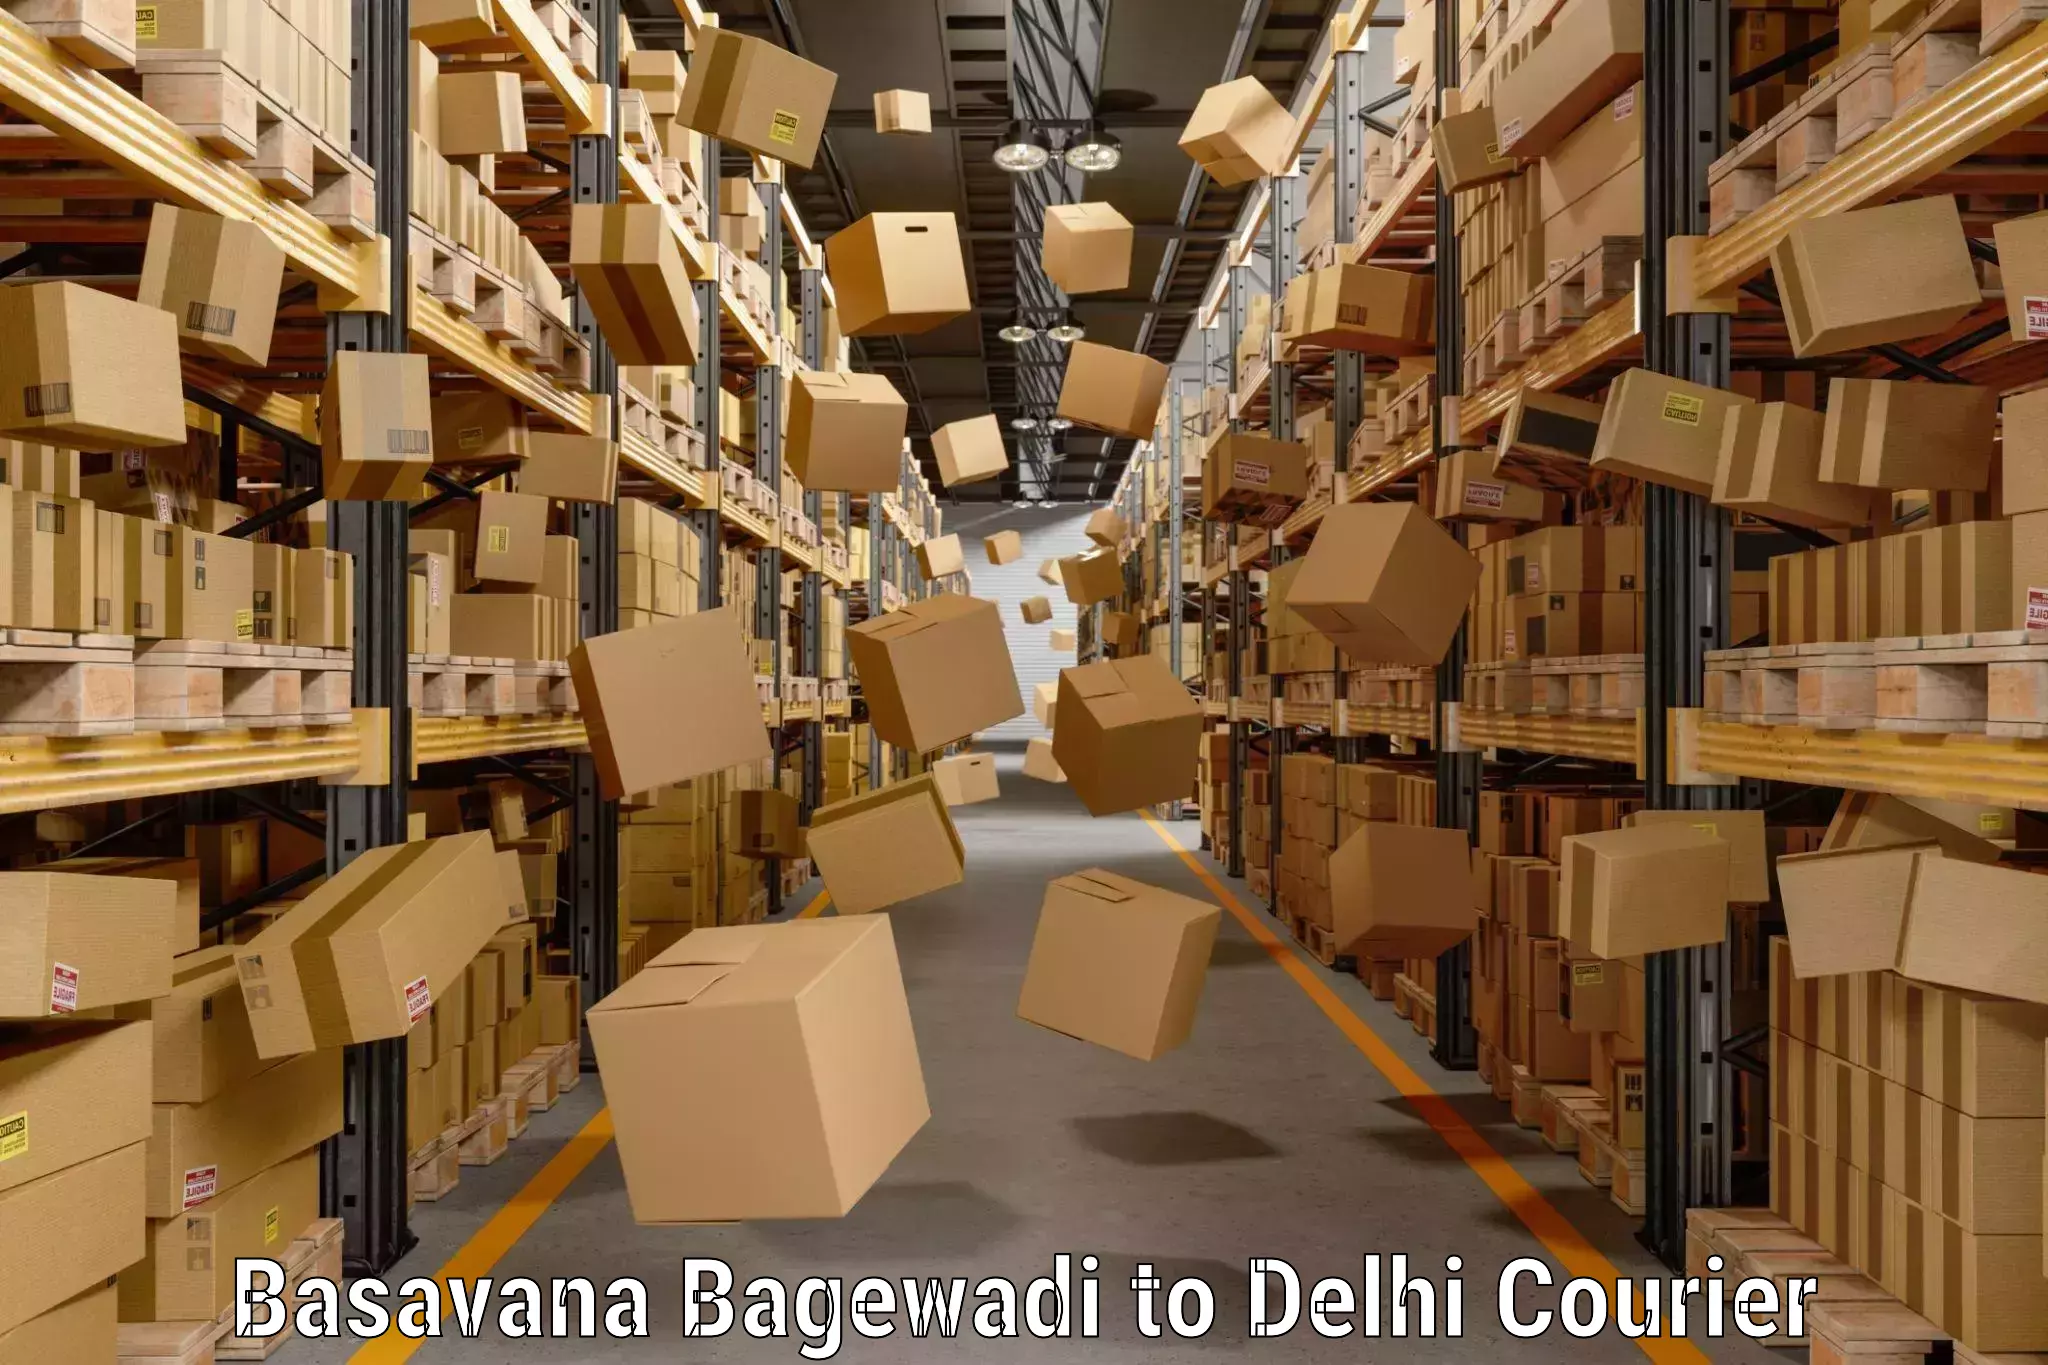 Luggage transport service Basavana Bagewadi to Delhi